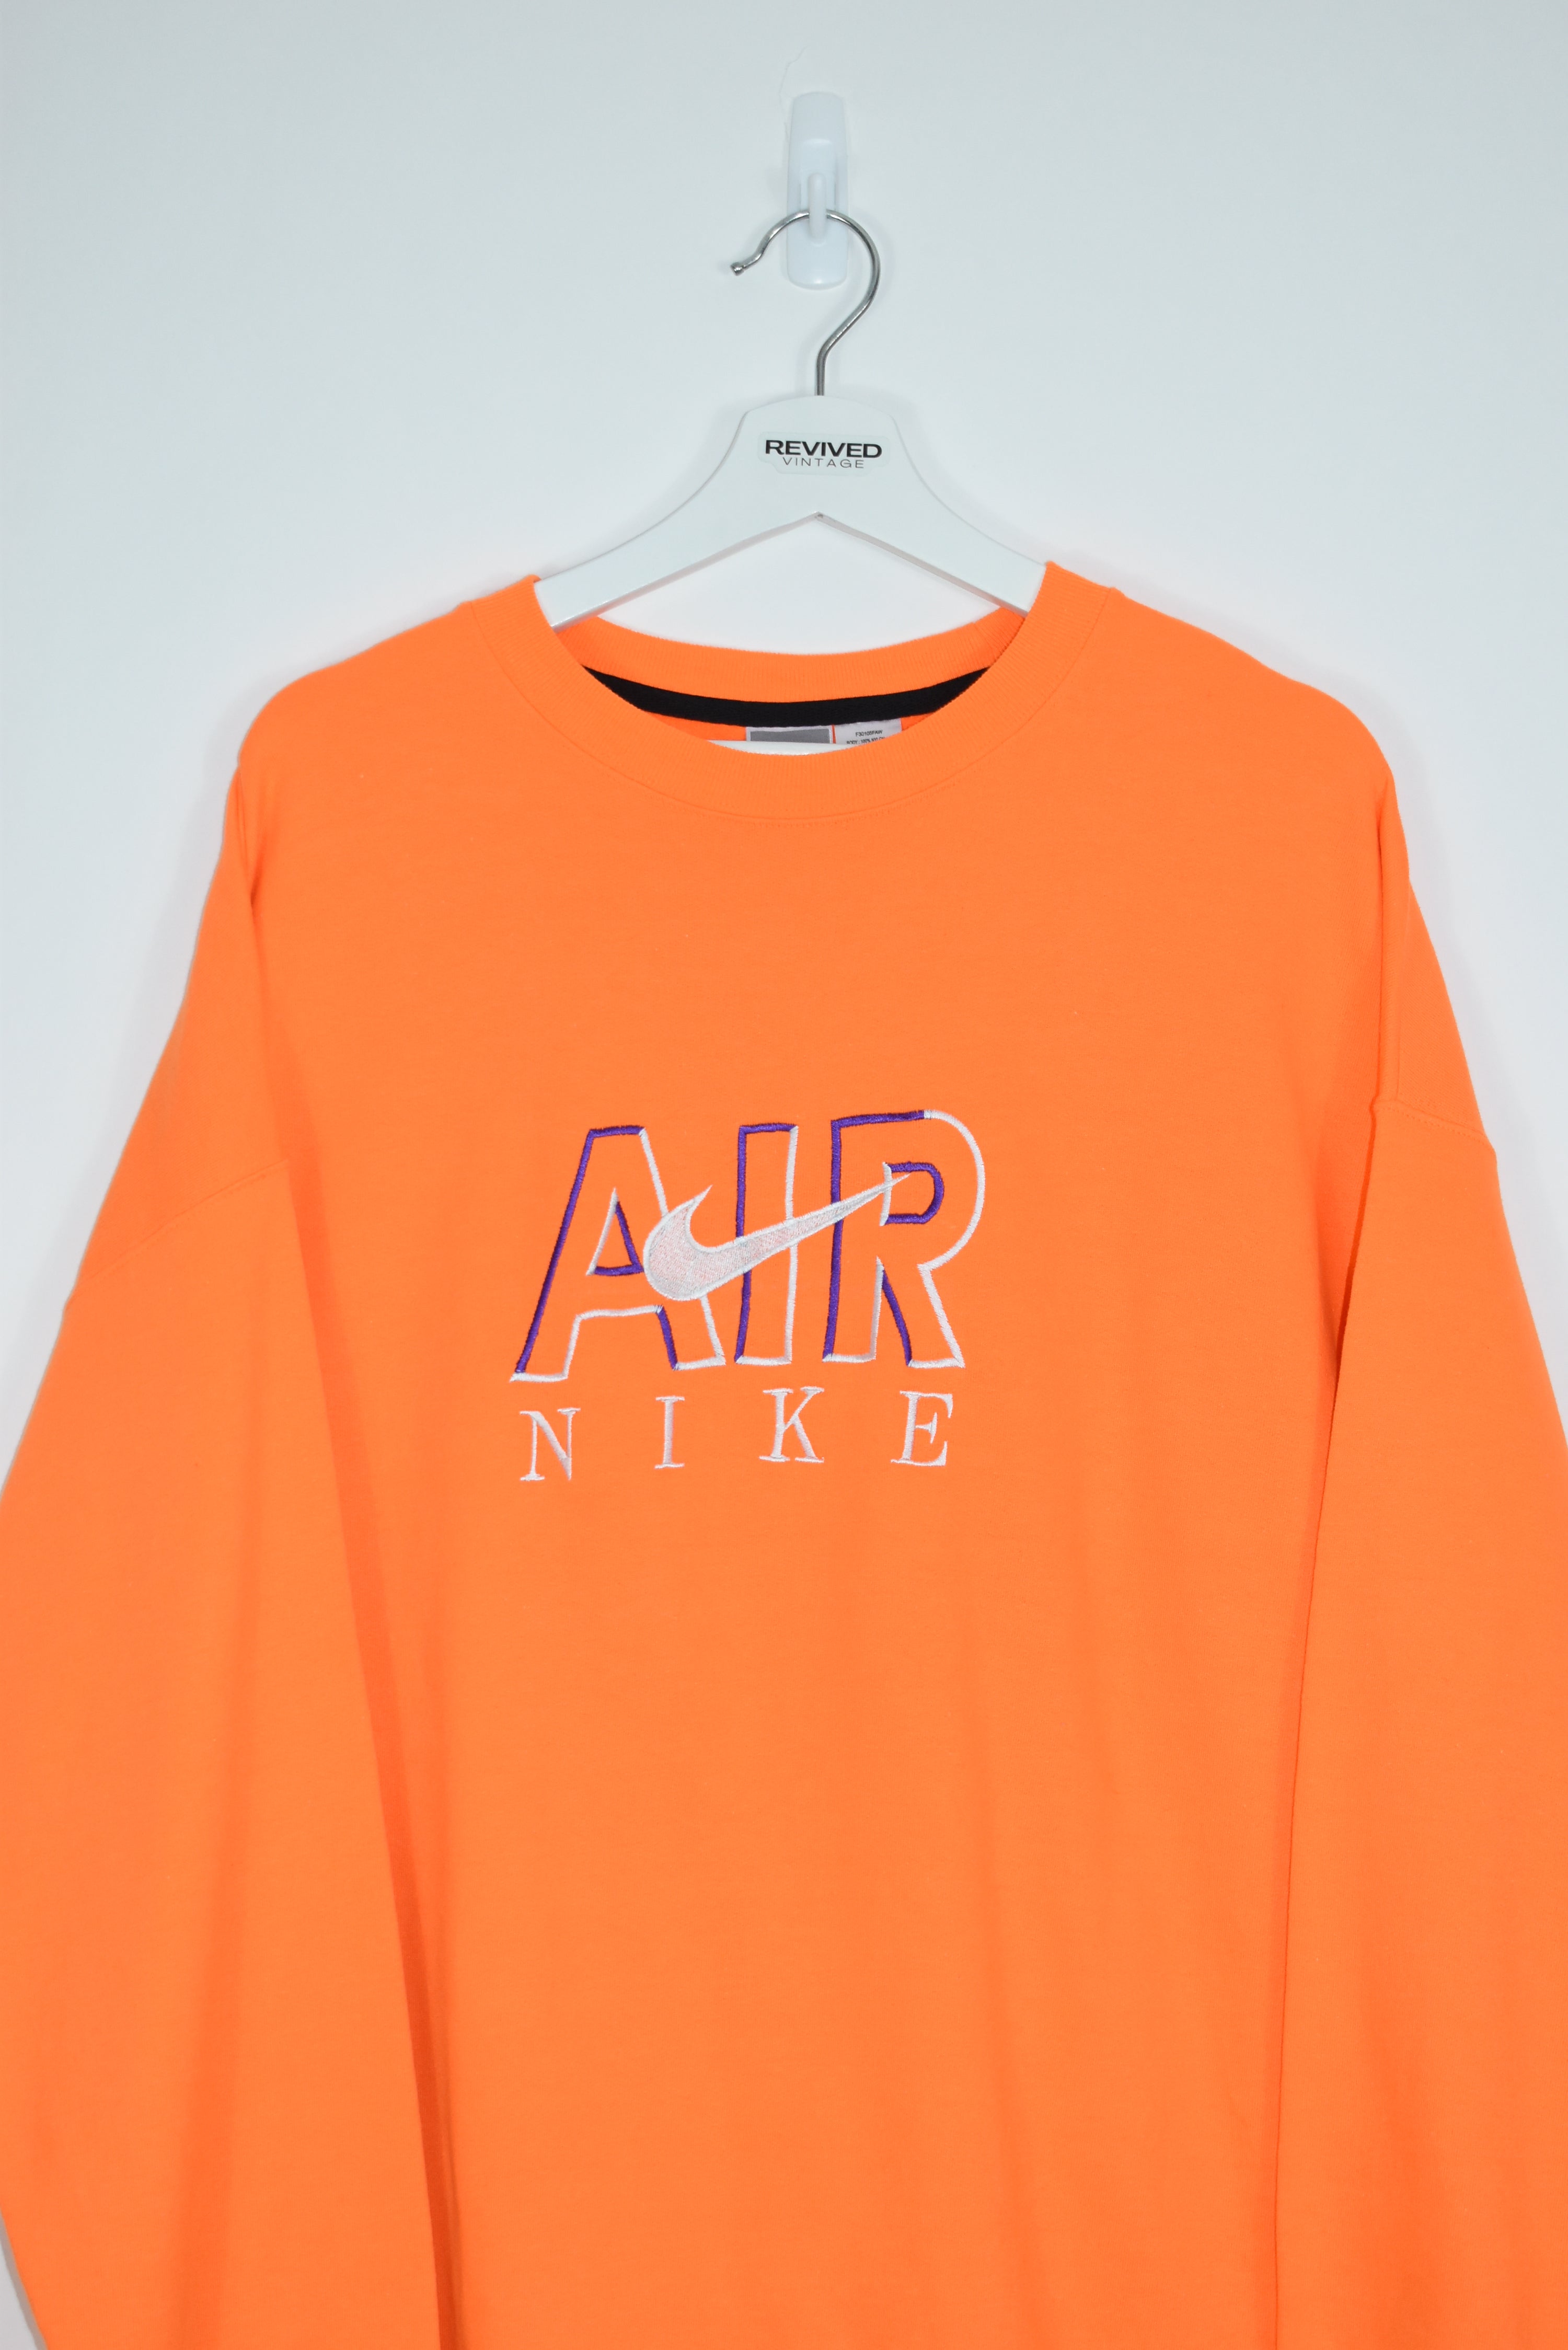 Vintage Nike Air Embroidery Bootleg Sweatshirt Orange Xlarge